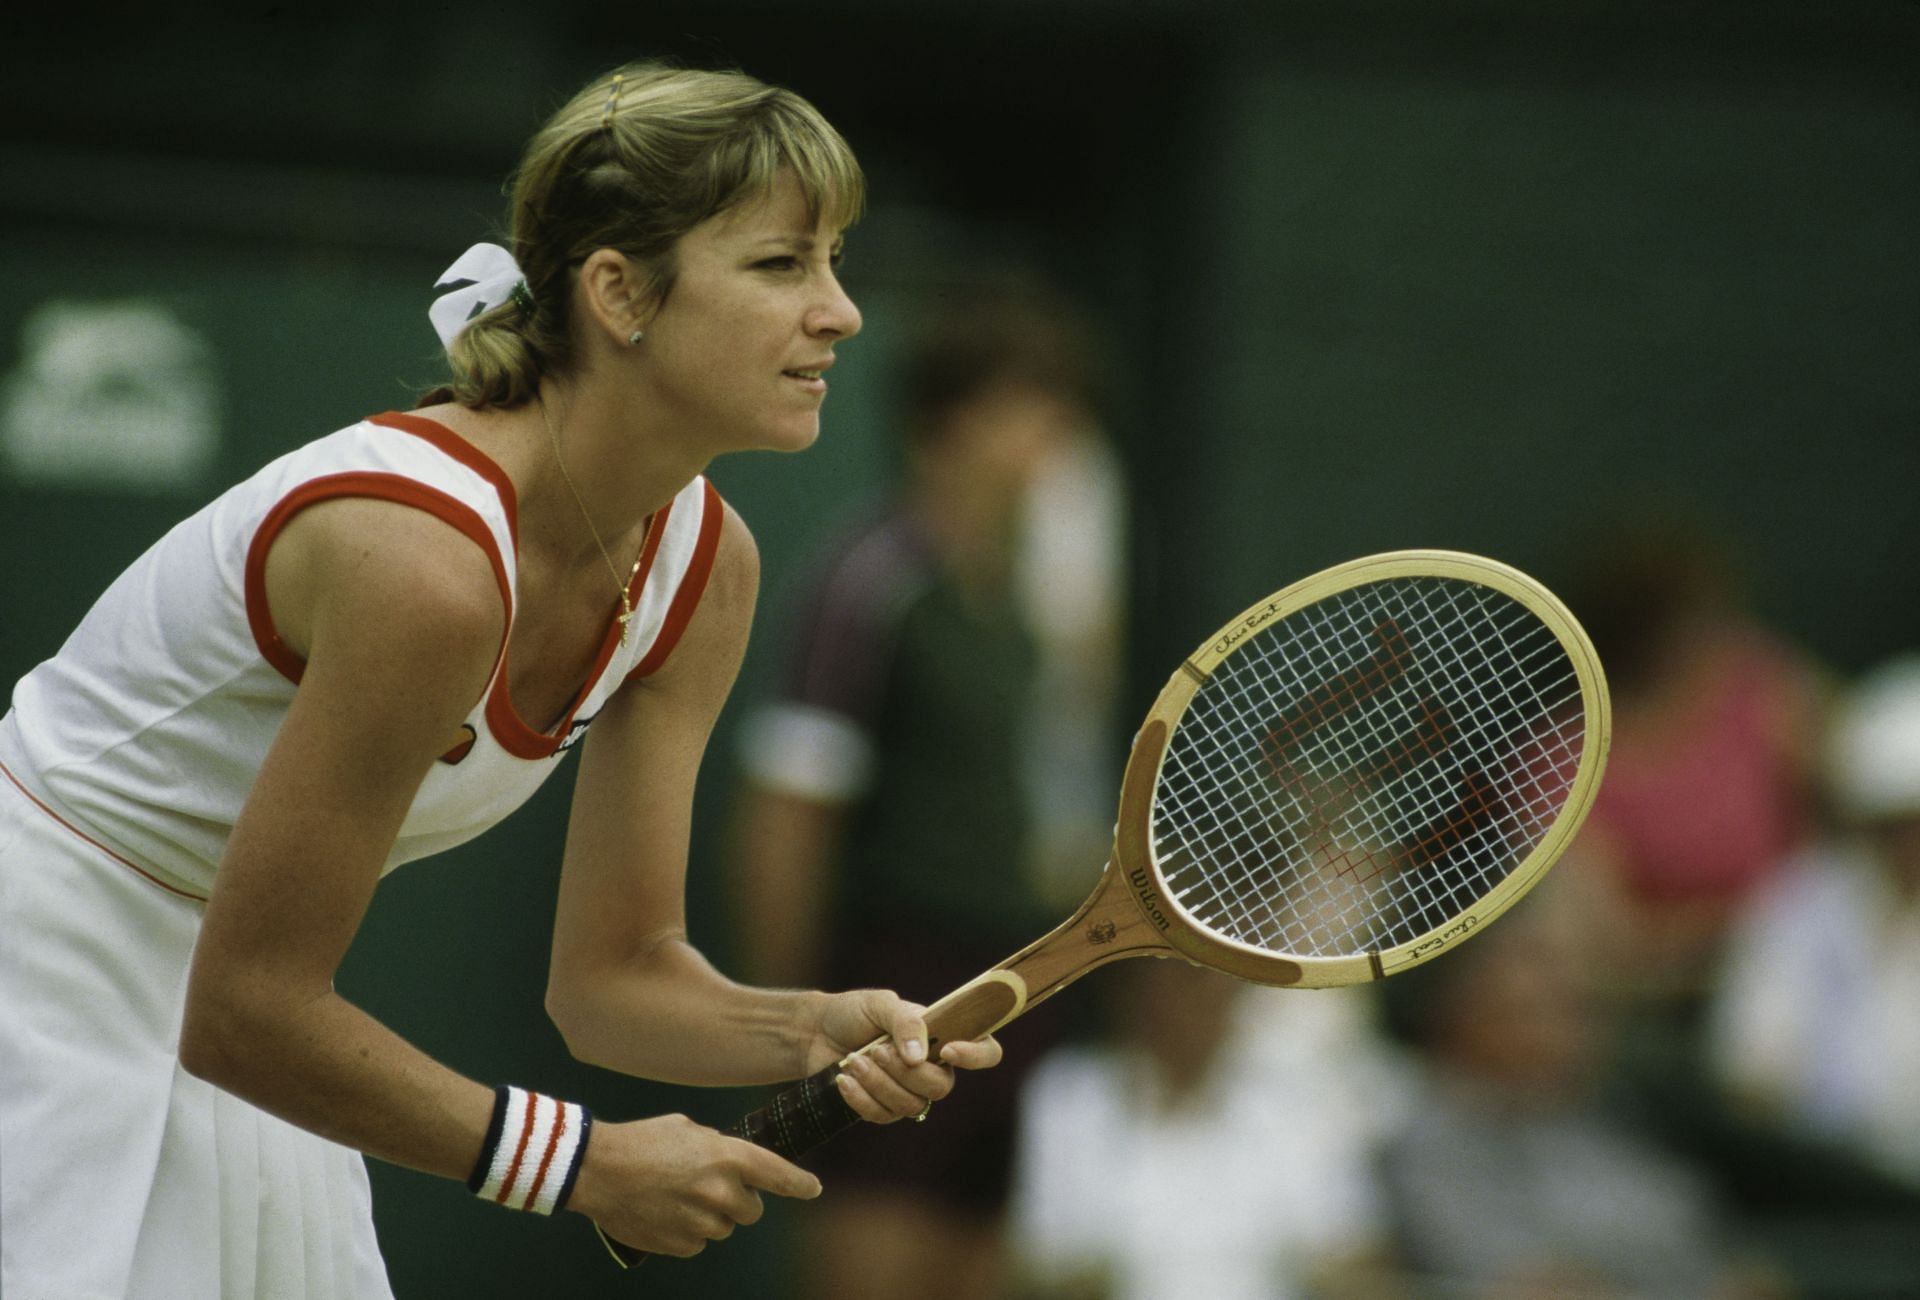 Chris Evert at the Wimbledon 1982